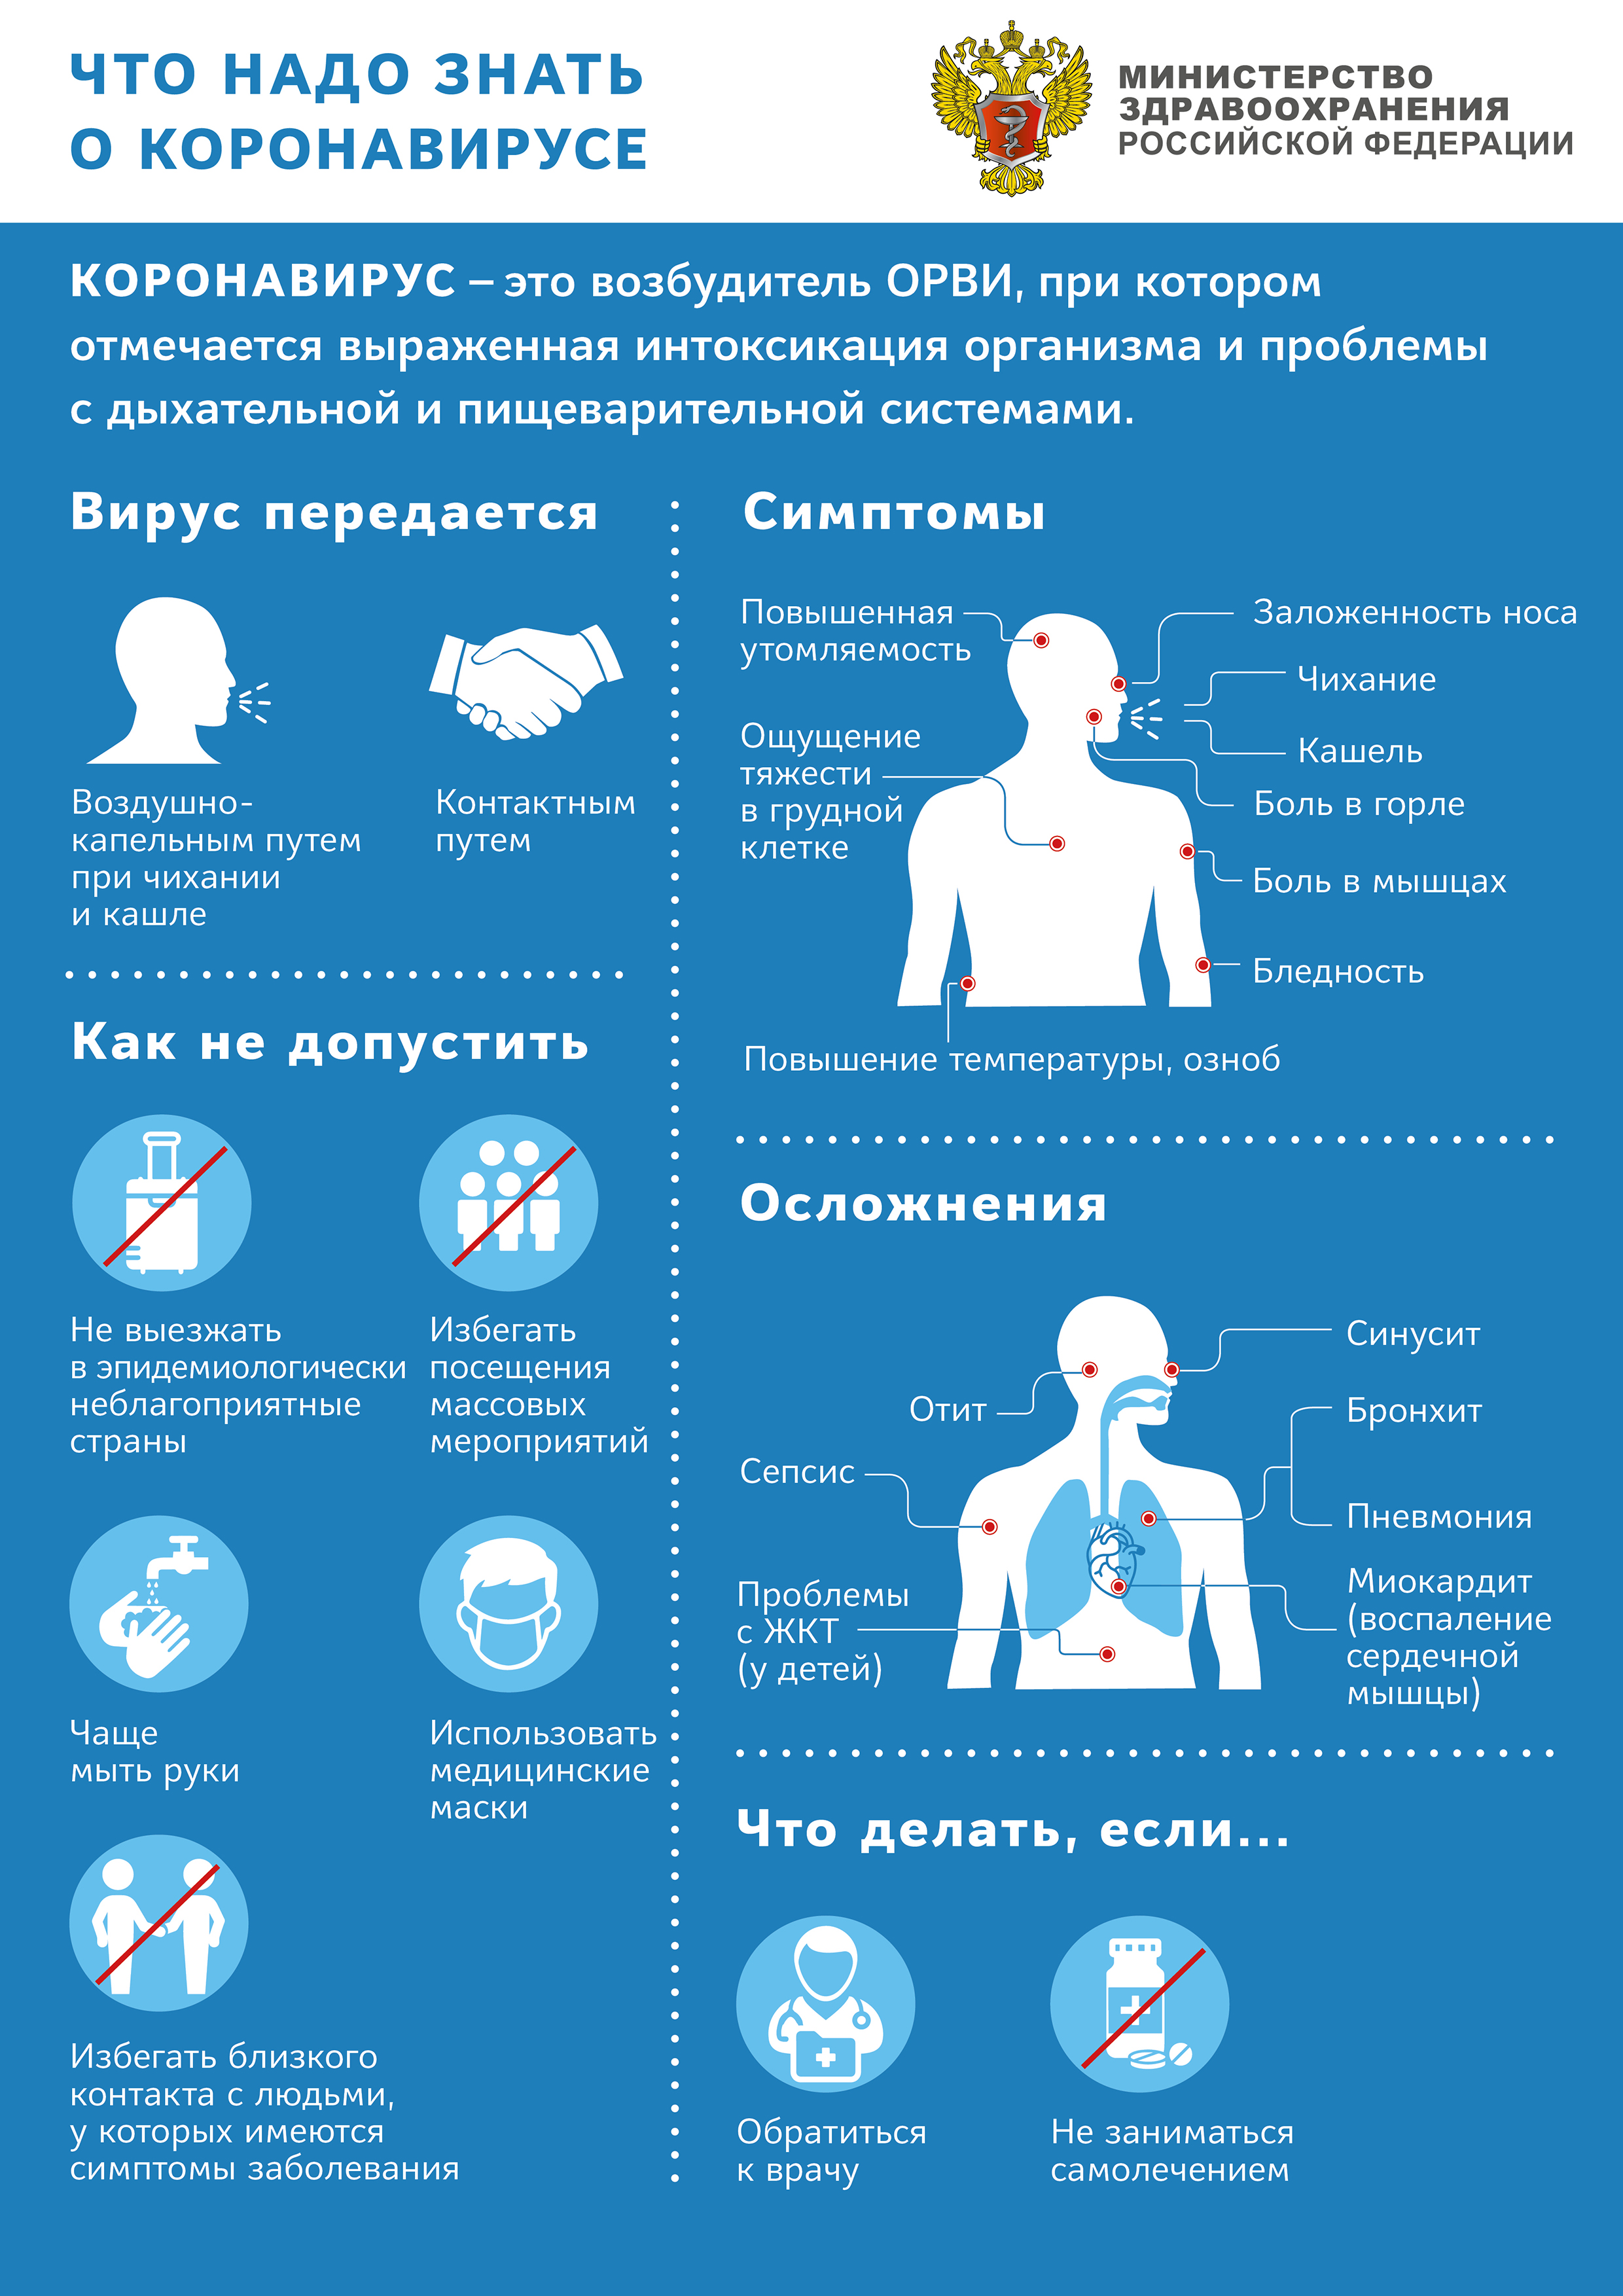 Что надо знать о короновирусе - рекомендации Минздрава РФ